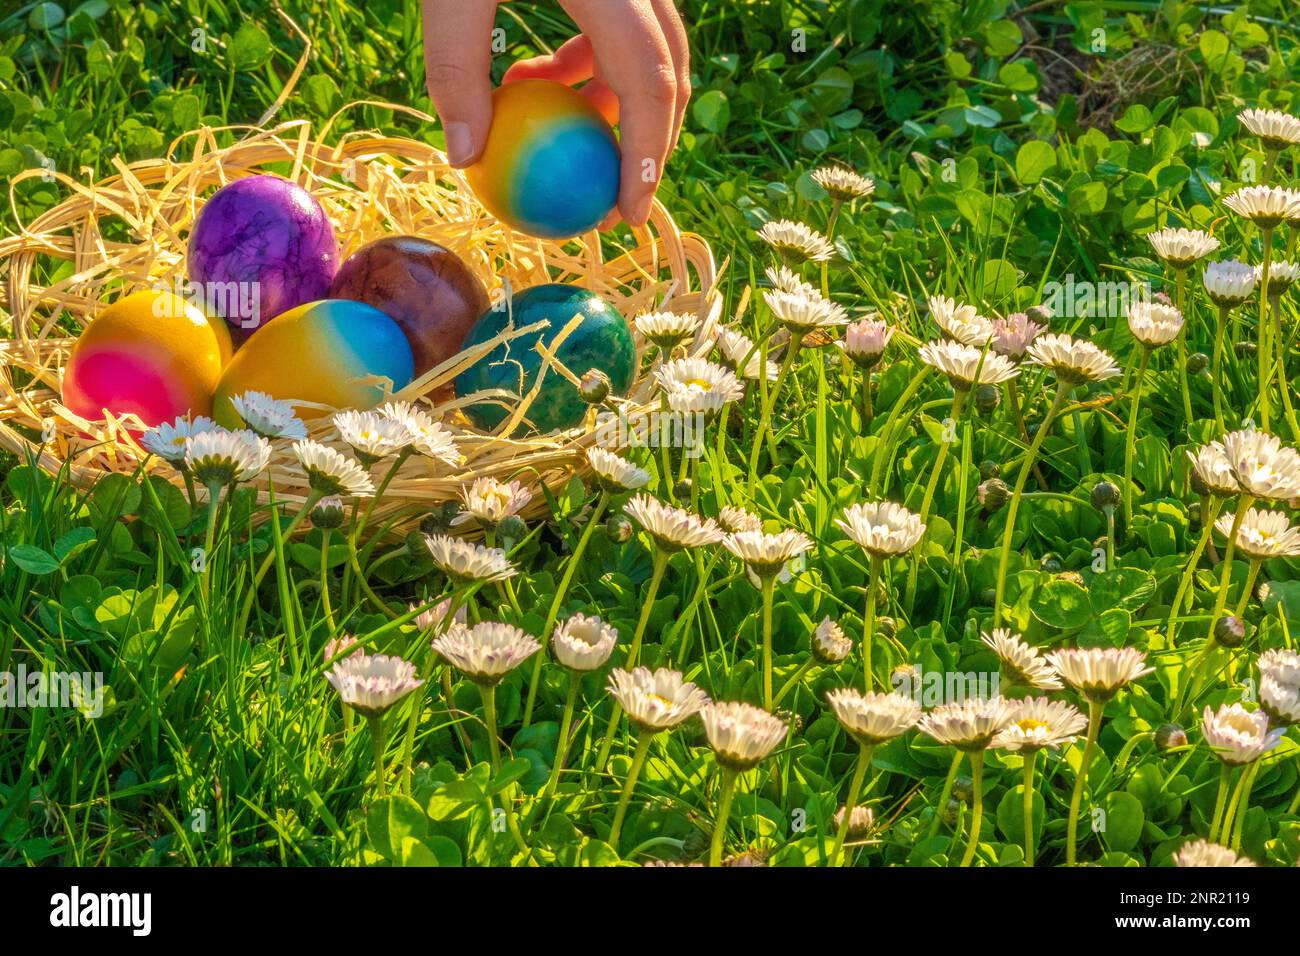 Caccia all'uovo di Pasqua. Raccolta di uova colorate da parte dei bambini in un prato con margherite.Pasqua vacanza Tradition.Child raccogliere le uova dipinte in primavera Foto Stock